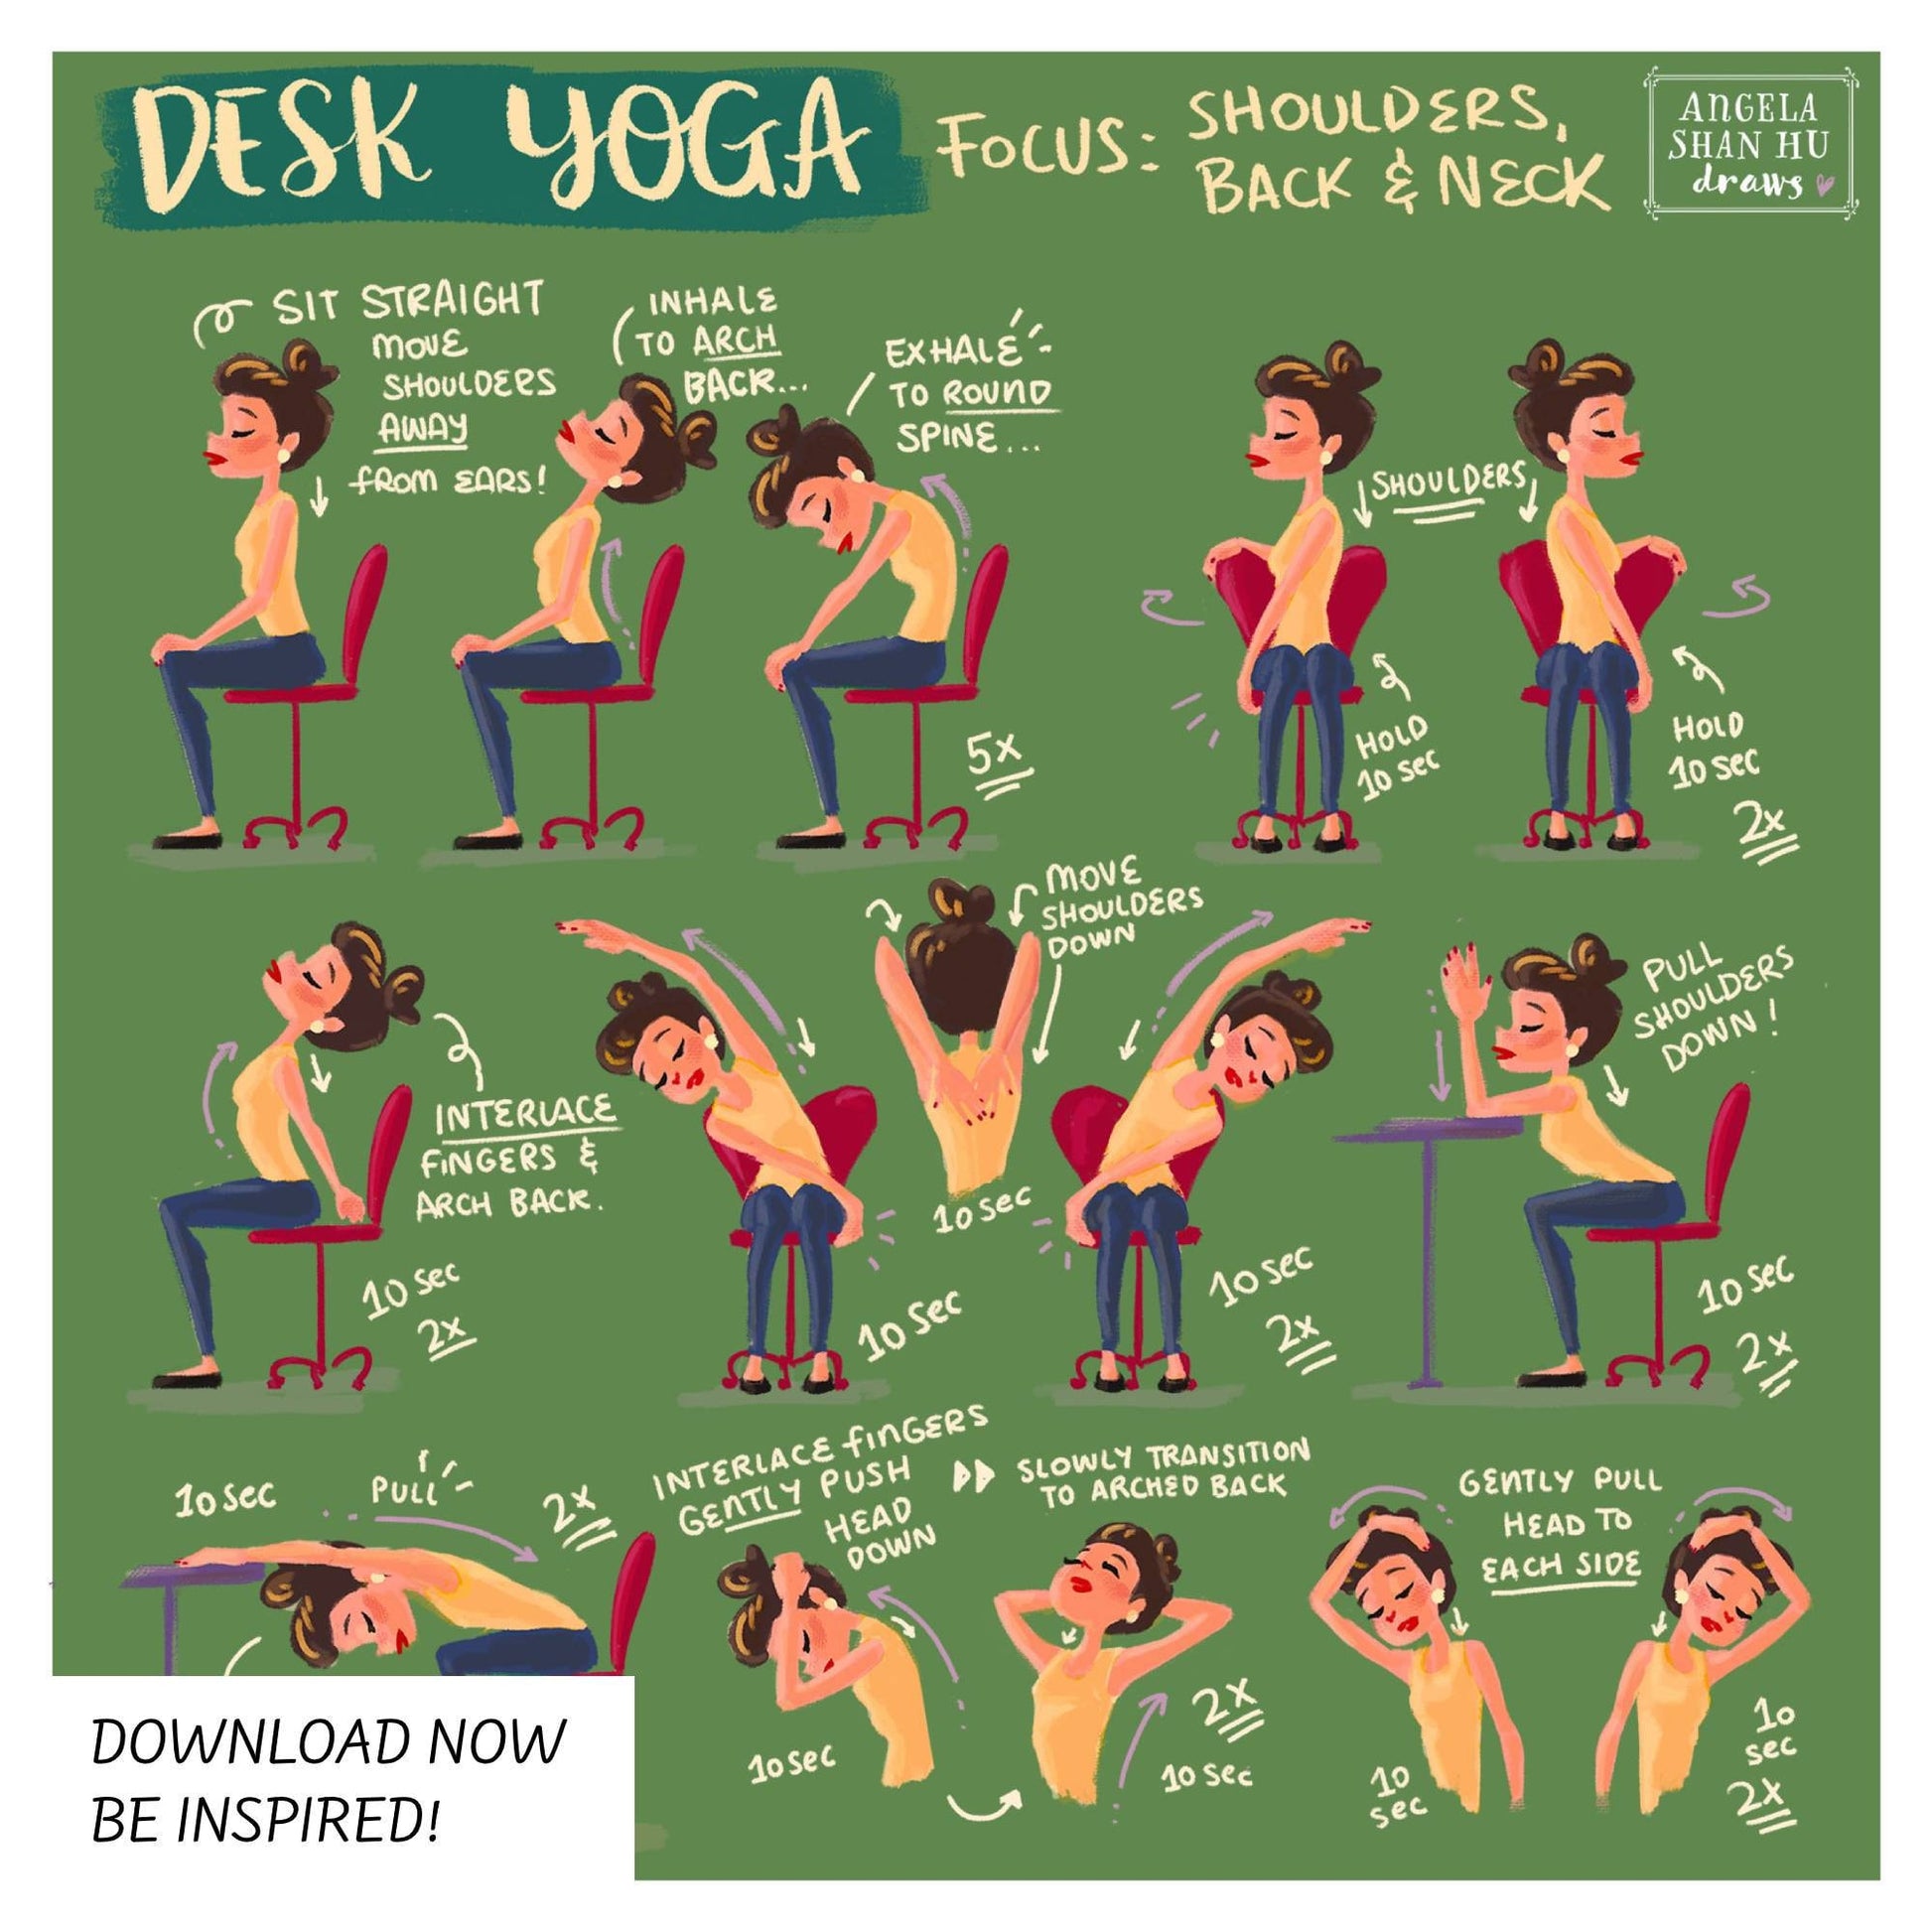 Desk Yoga - focus on shoulders, back and neck